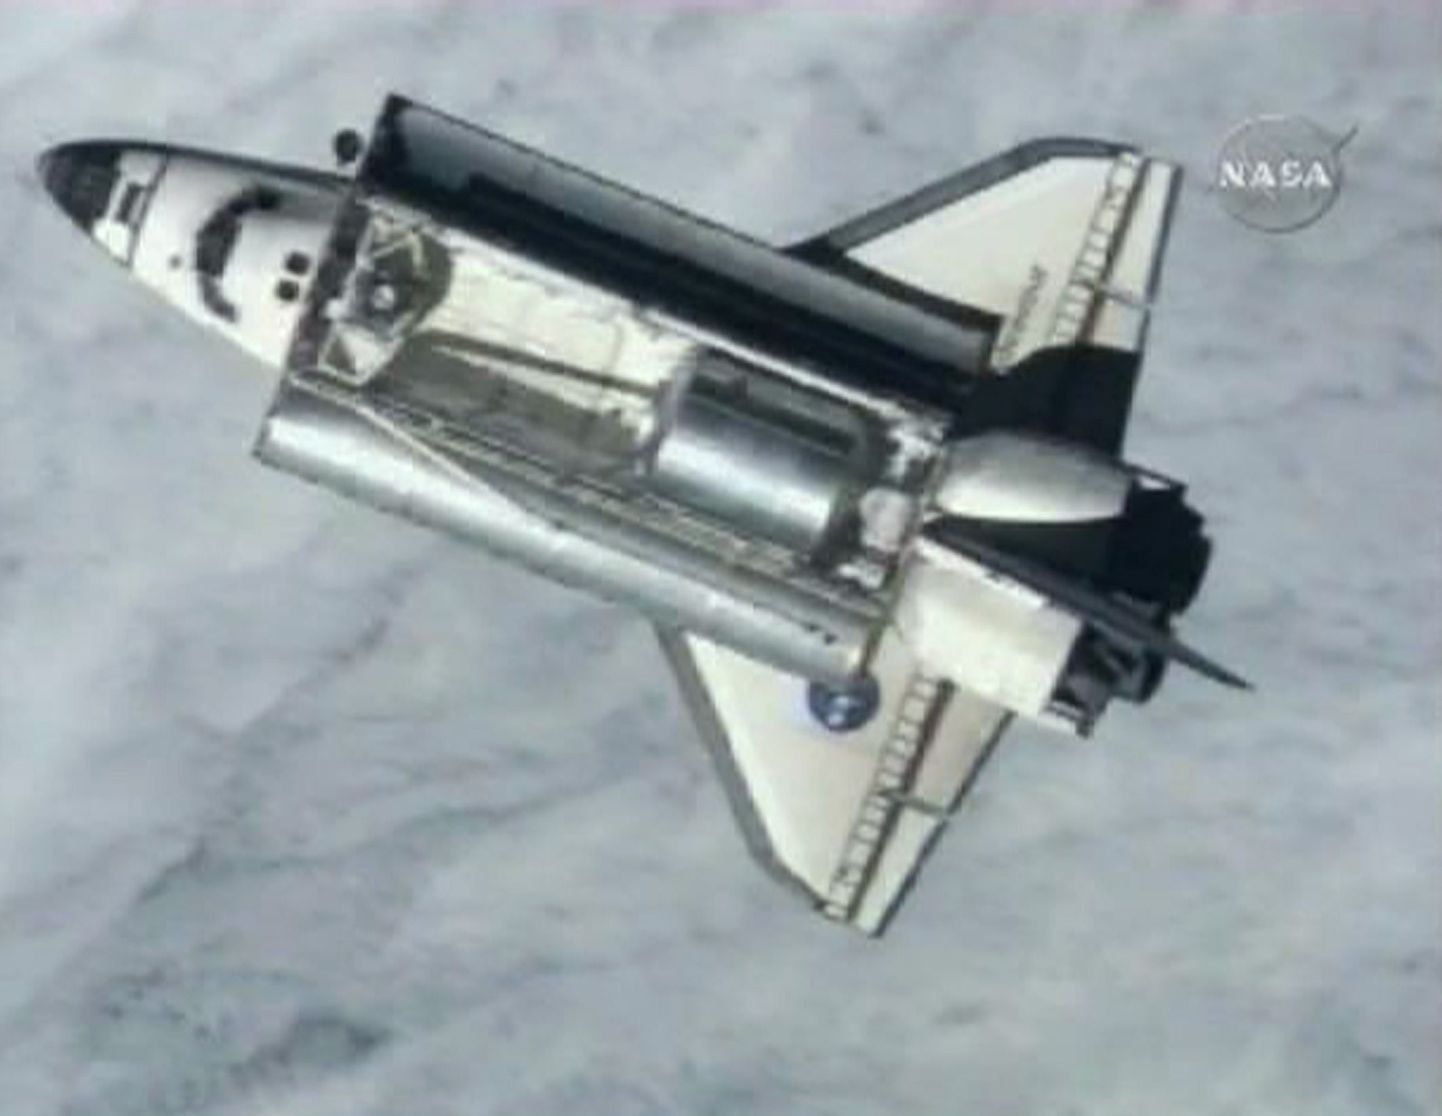 NASA kosmosesüstik Endeavour.